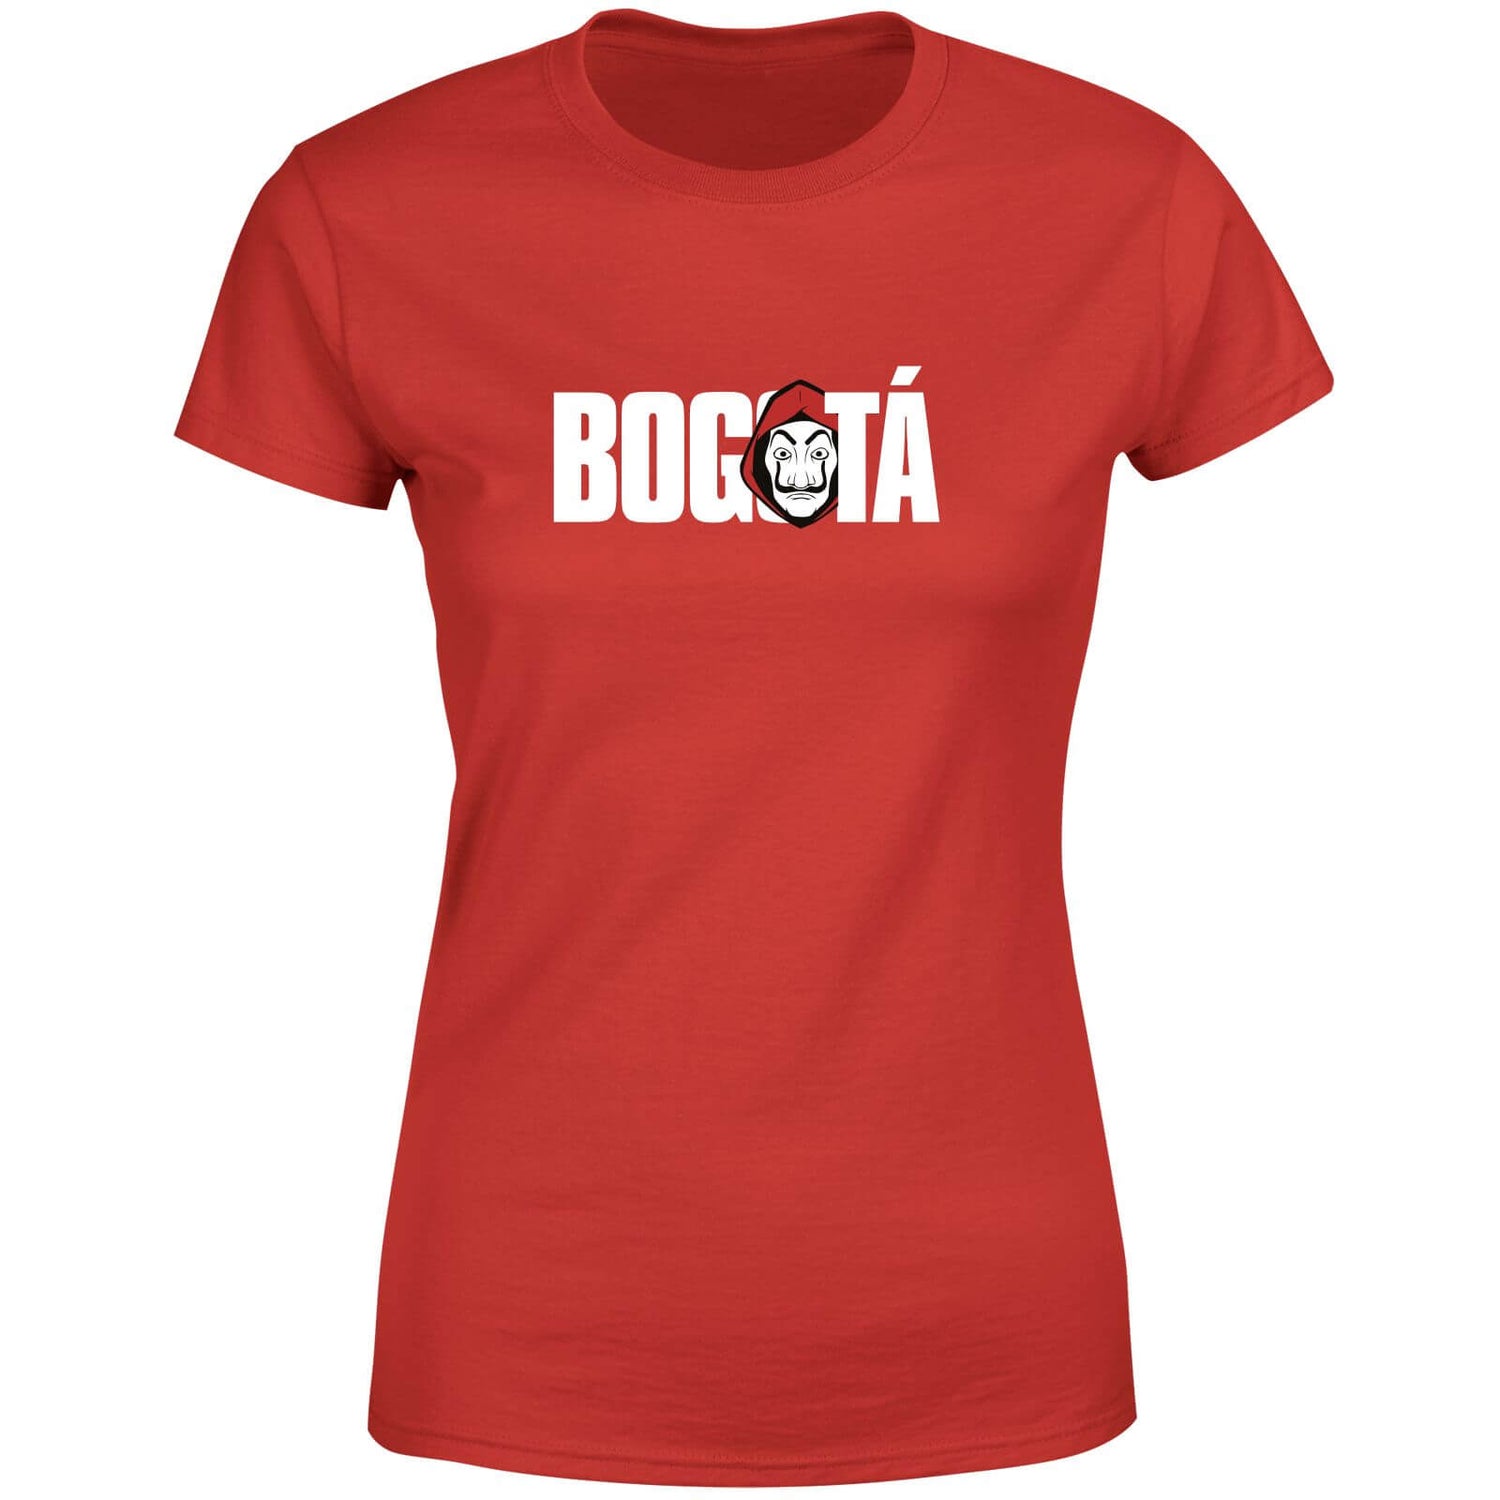 Money Heist Bogota Women's T-Shirt - Red